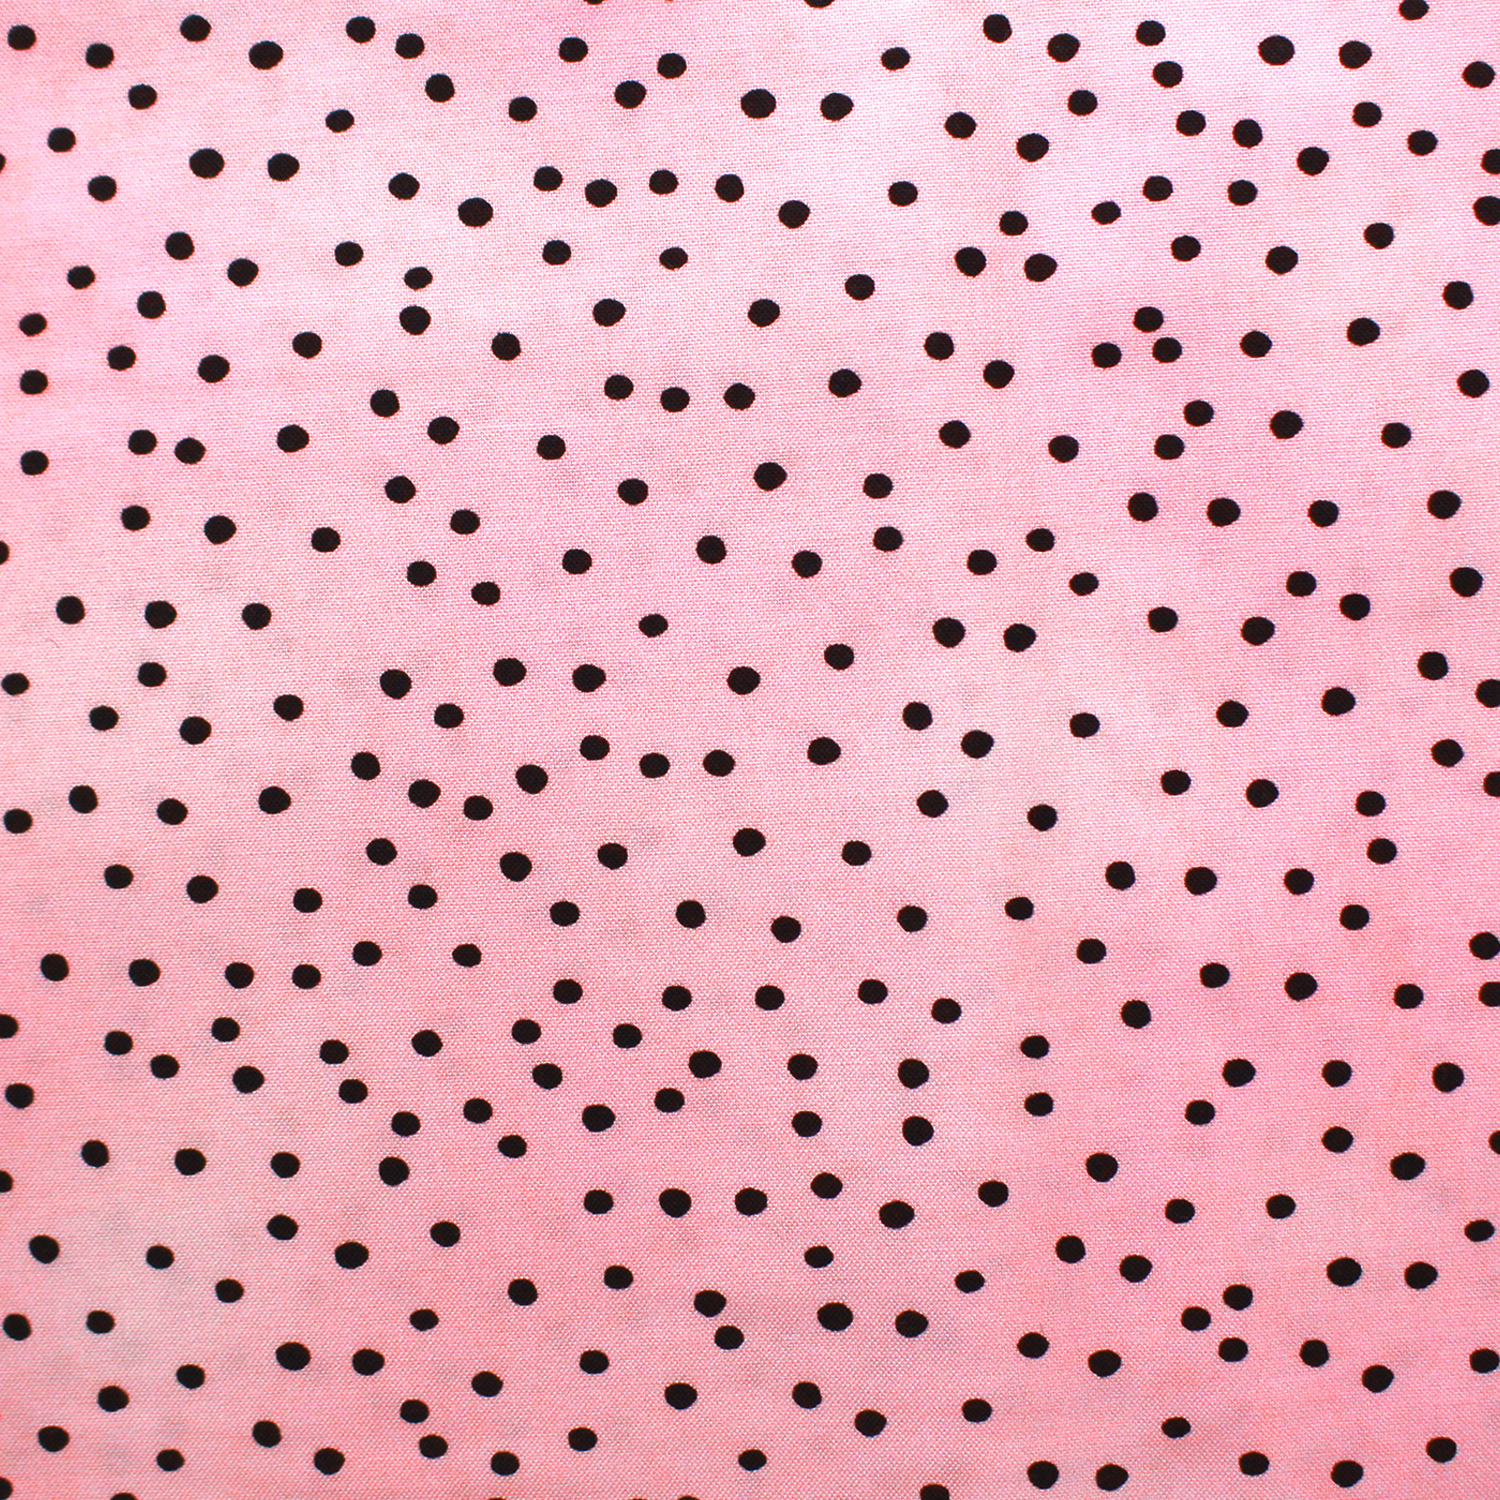 【1221再プリ】LORA692-525 Loralie Designs ピンク地黒ドット 巾約110cm×1m単位 (m)